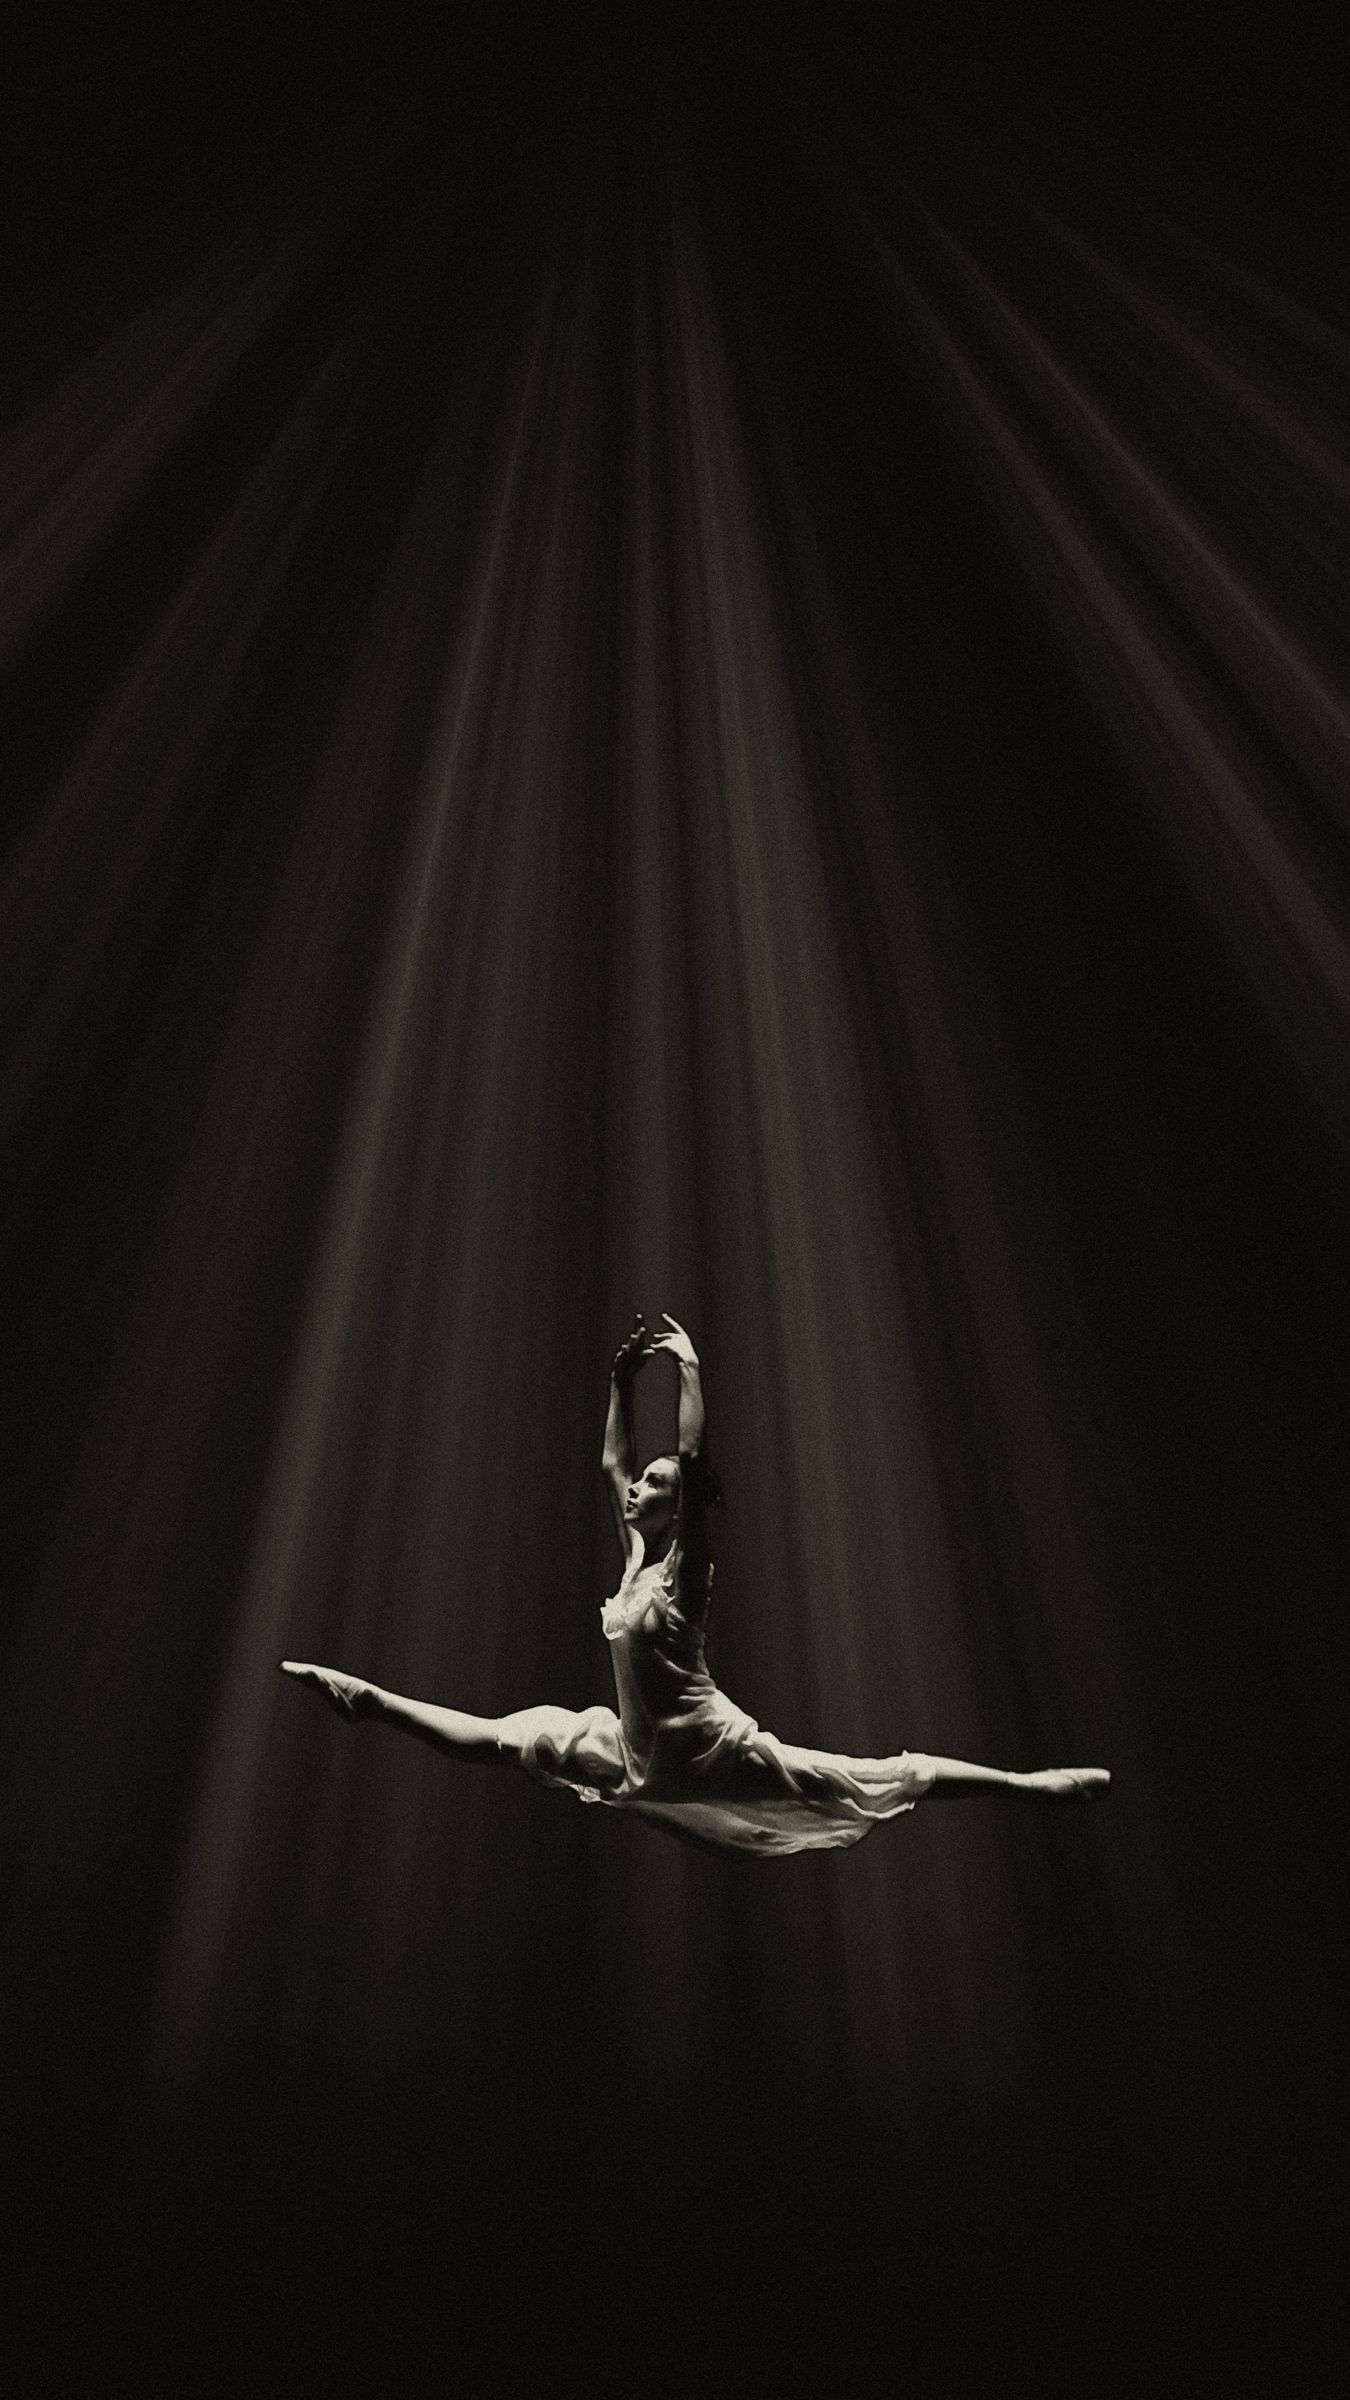 Wallpaper Ballerina Ballet Dance Bw Flight